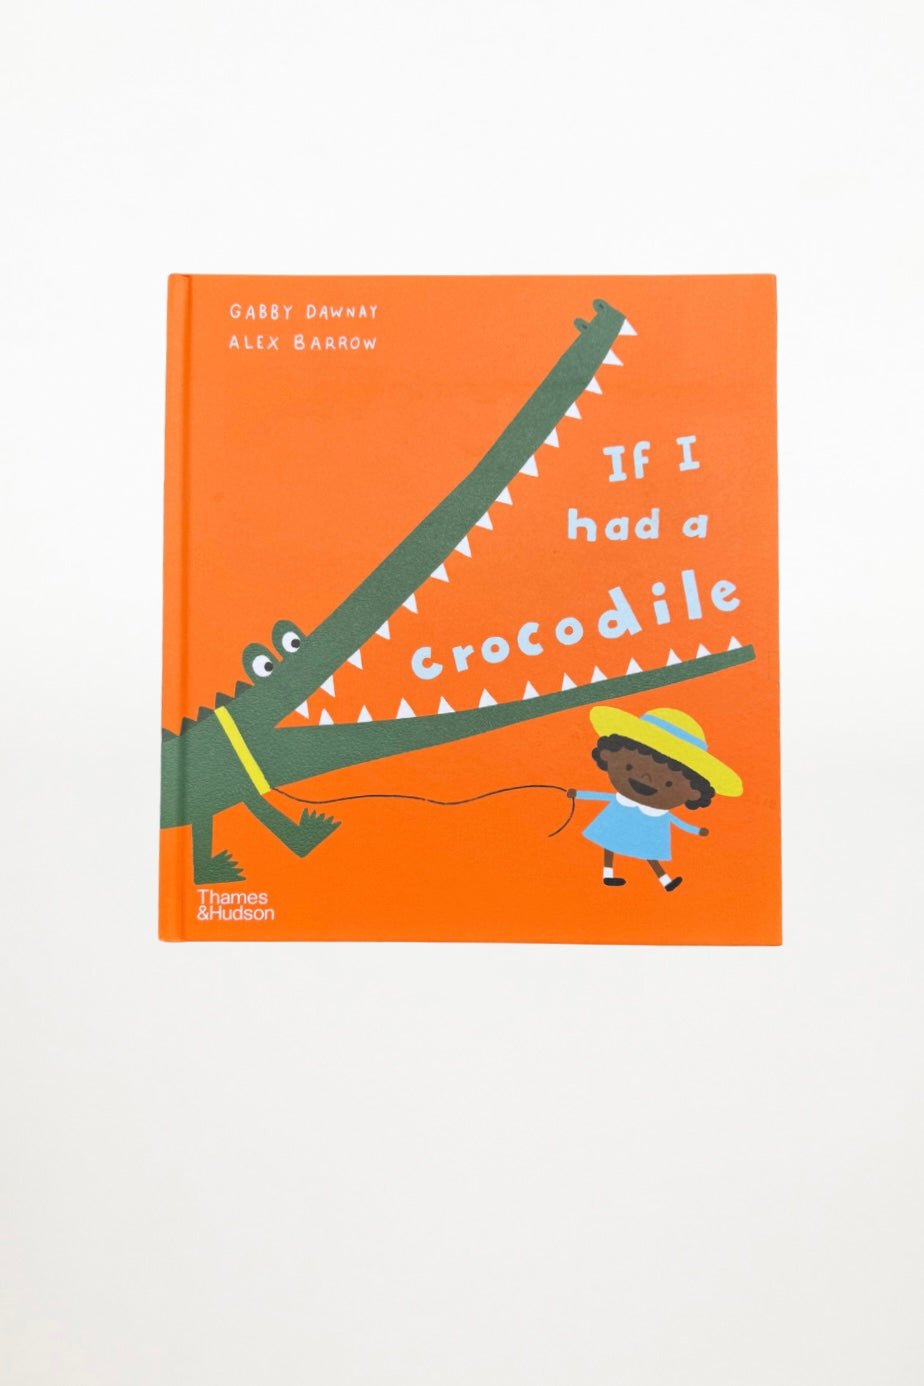 If I had a crocodile - Gabby Dawnay & Alex Barrow - Ensemble Studios